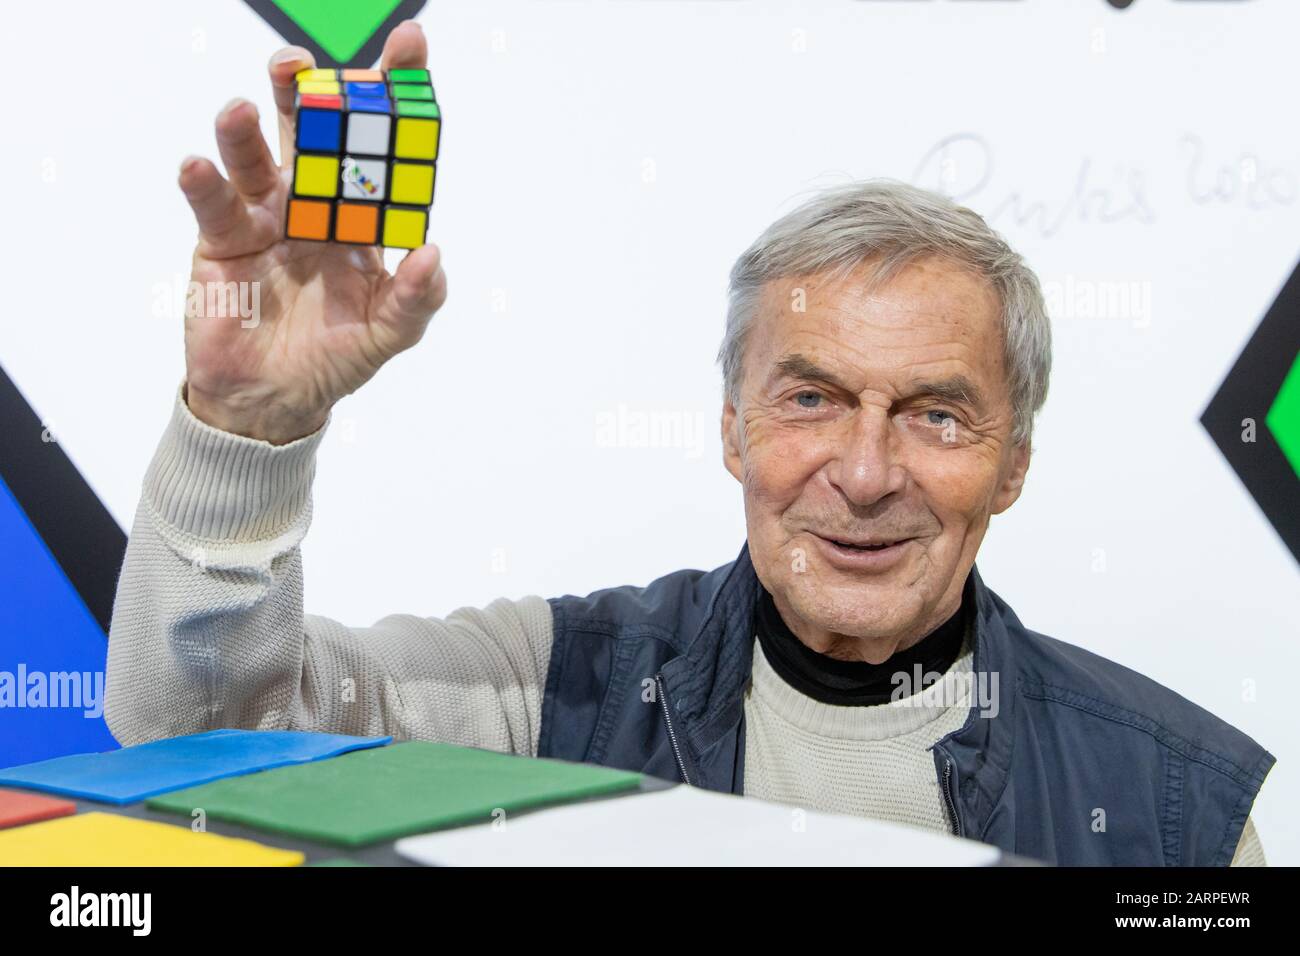 Nuremberg, Allemagne. 29 janvier 2020. Erno Rubik, inventeur du Rubik's Cube,  tient le "Cube magique" dans sa main au stand de Ravensburger à  l'International Toy Fair dans le cadre des célébrations pendant